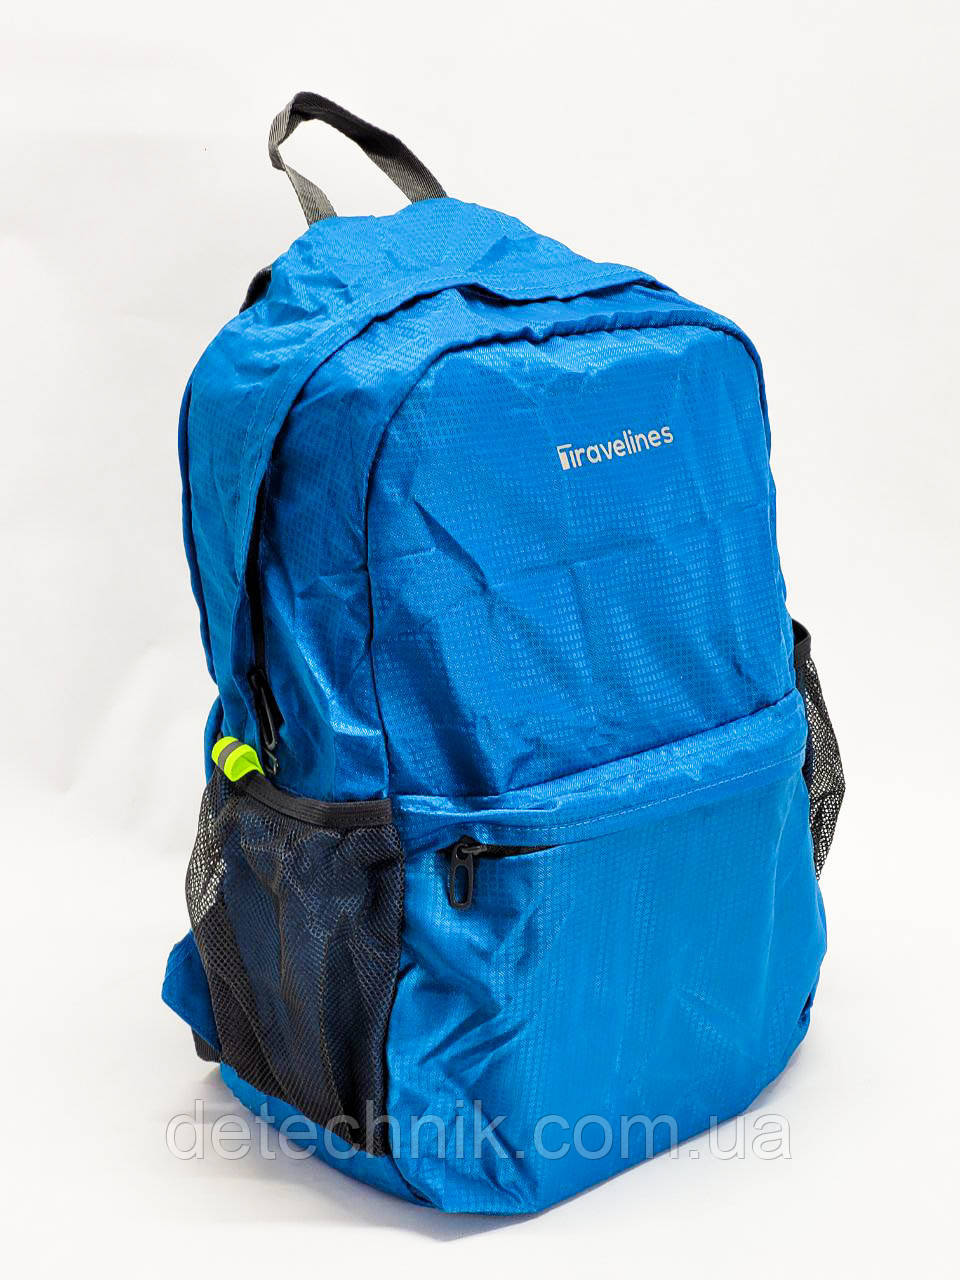 Складаний водонепроникний рюкзак + сумка